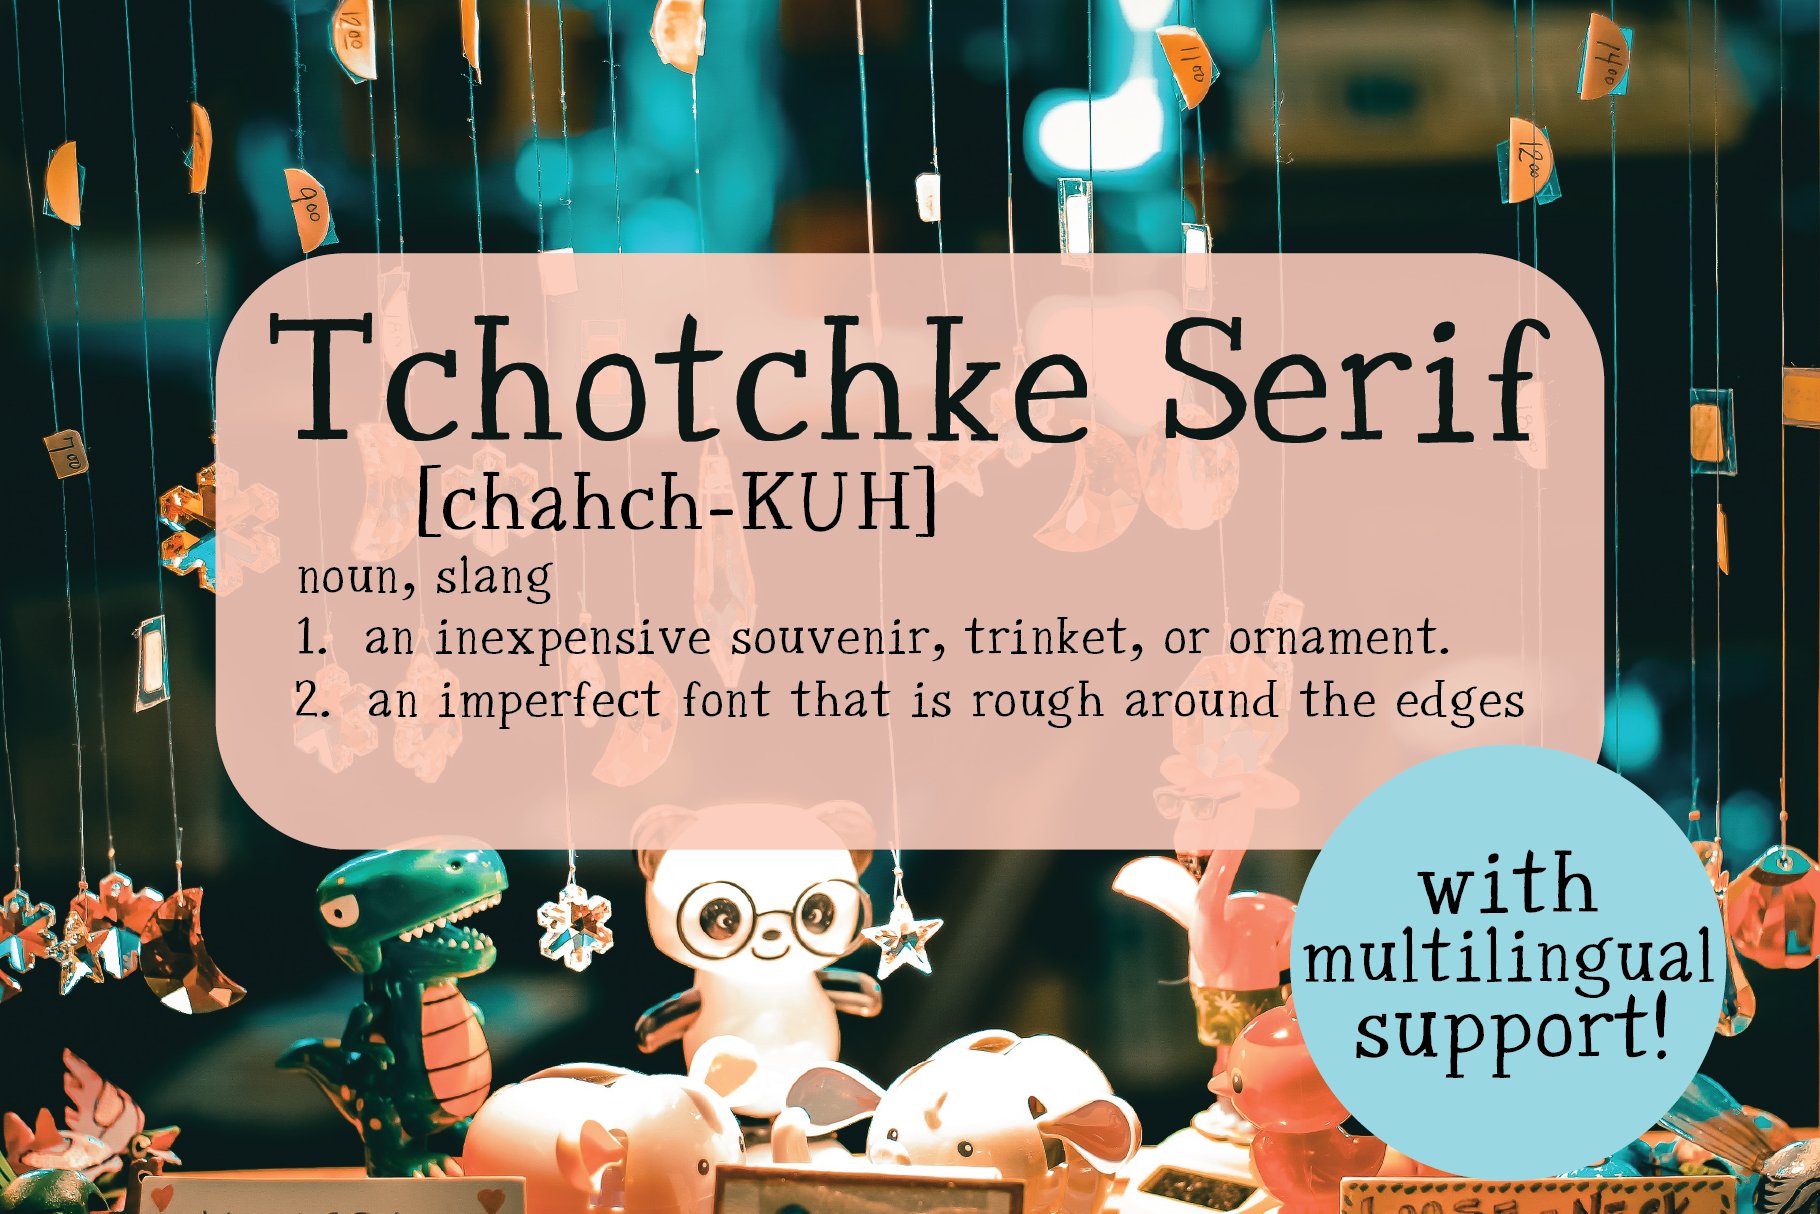 Tchotchke Serif cover image.